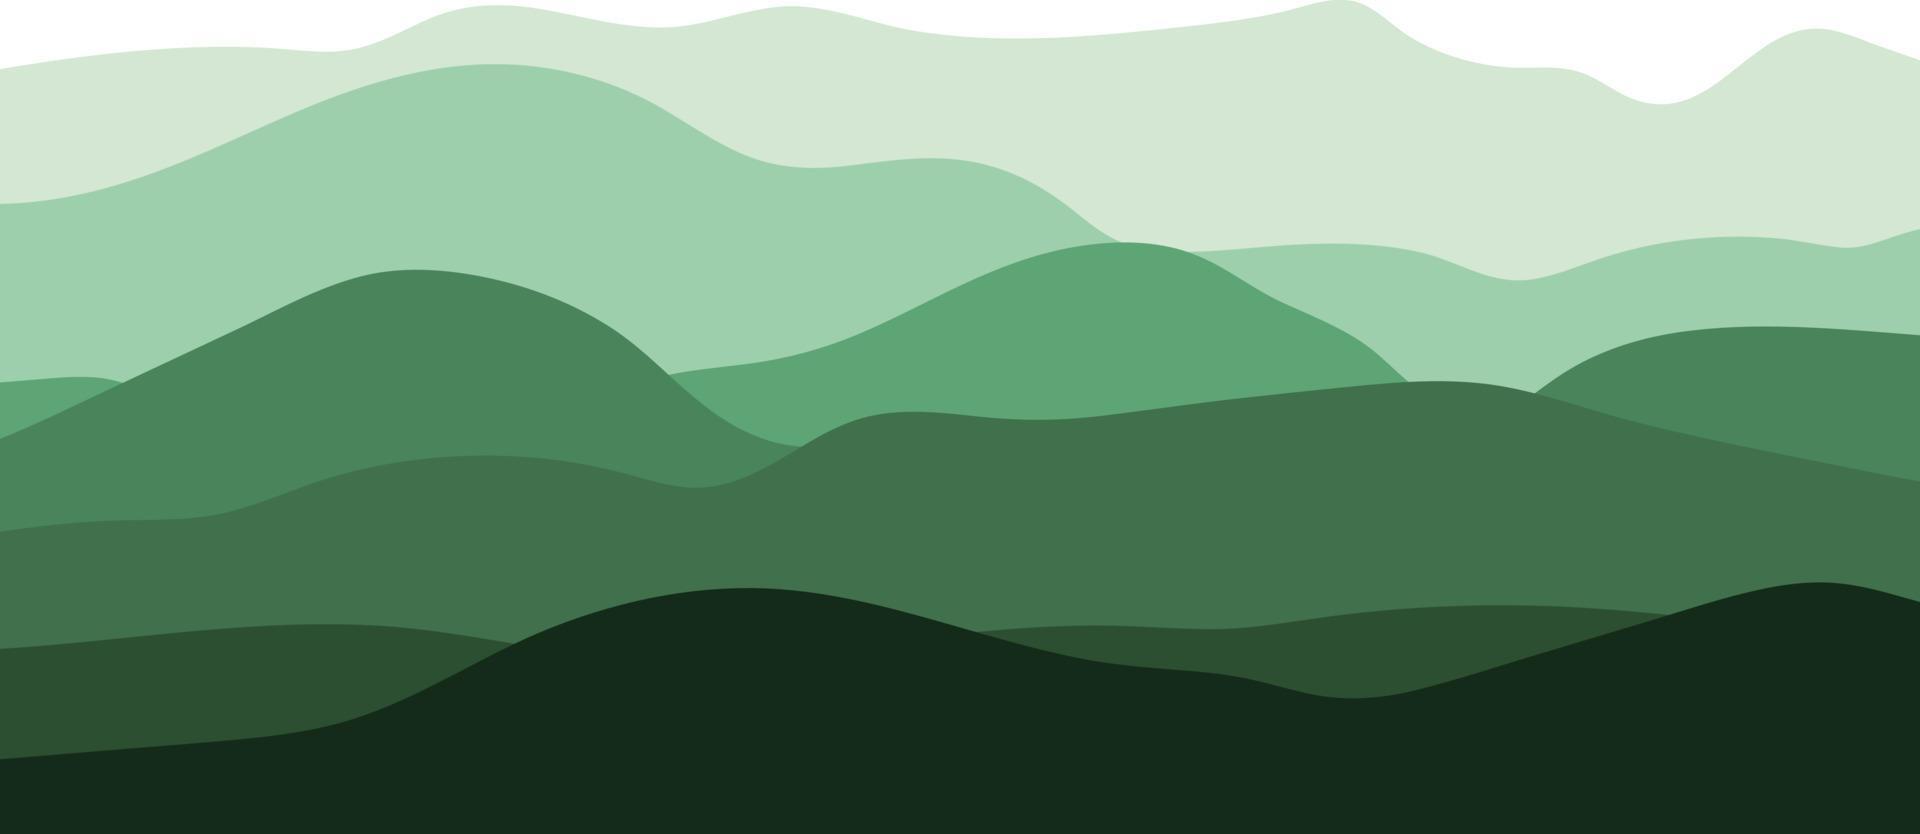 montañas, vectores. ilustración con la silueta de las montañas en verde sobre fondo blanco. vector